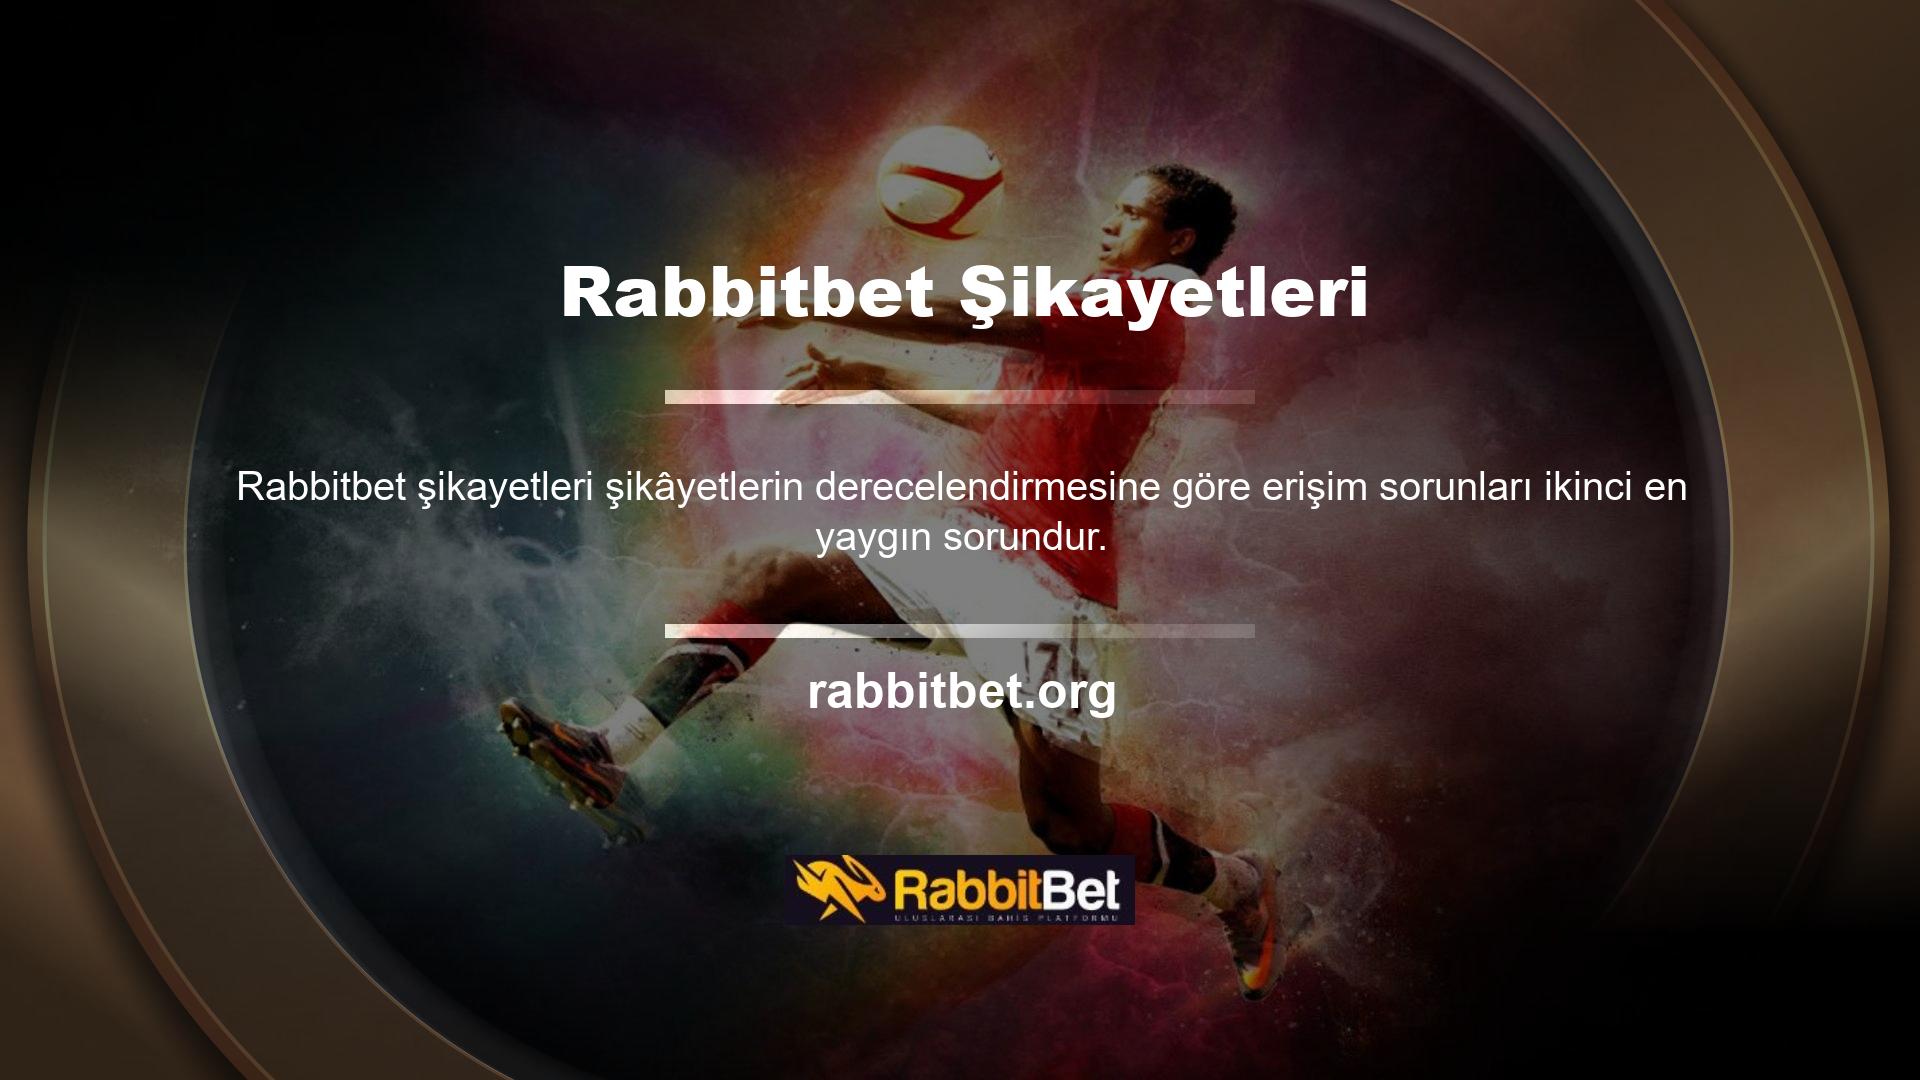 Erişim sorunu sektörde yaygın bir endişe olmasına rağmen, Rabbitbet Şikâyet Teknolojisi ekibi derhal harekete geçti ve müşterilerimize gelebilecek herhangi bir olası zararı önledi